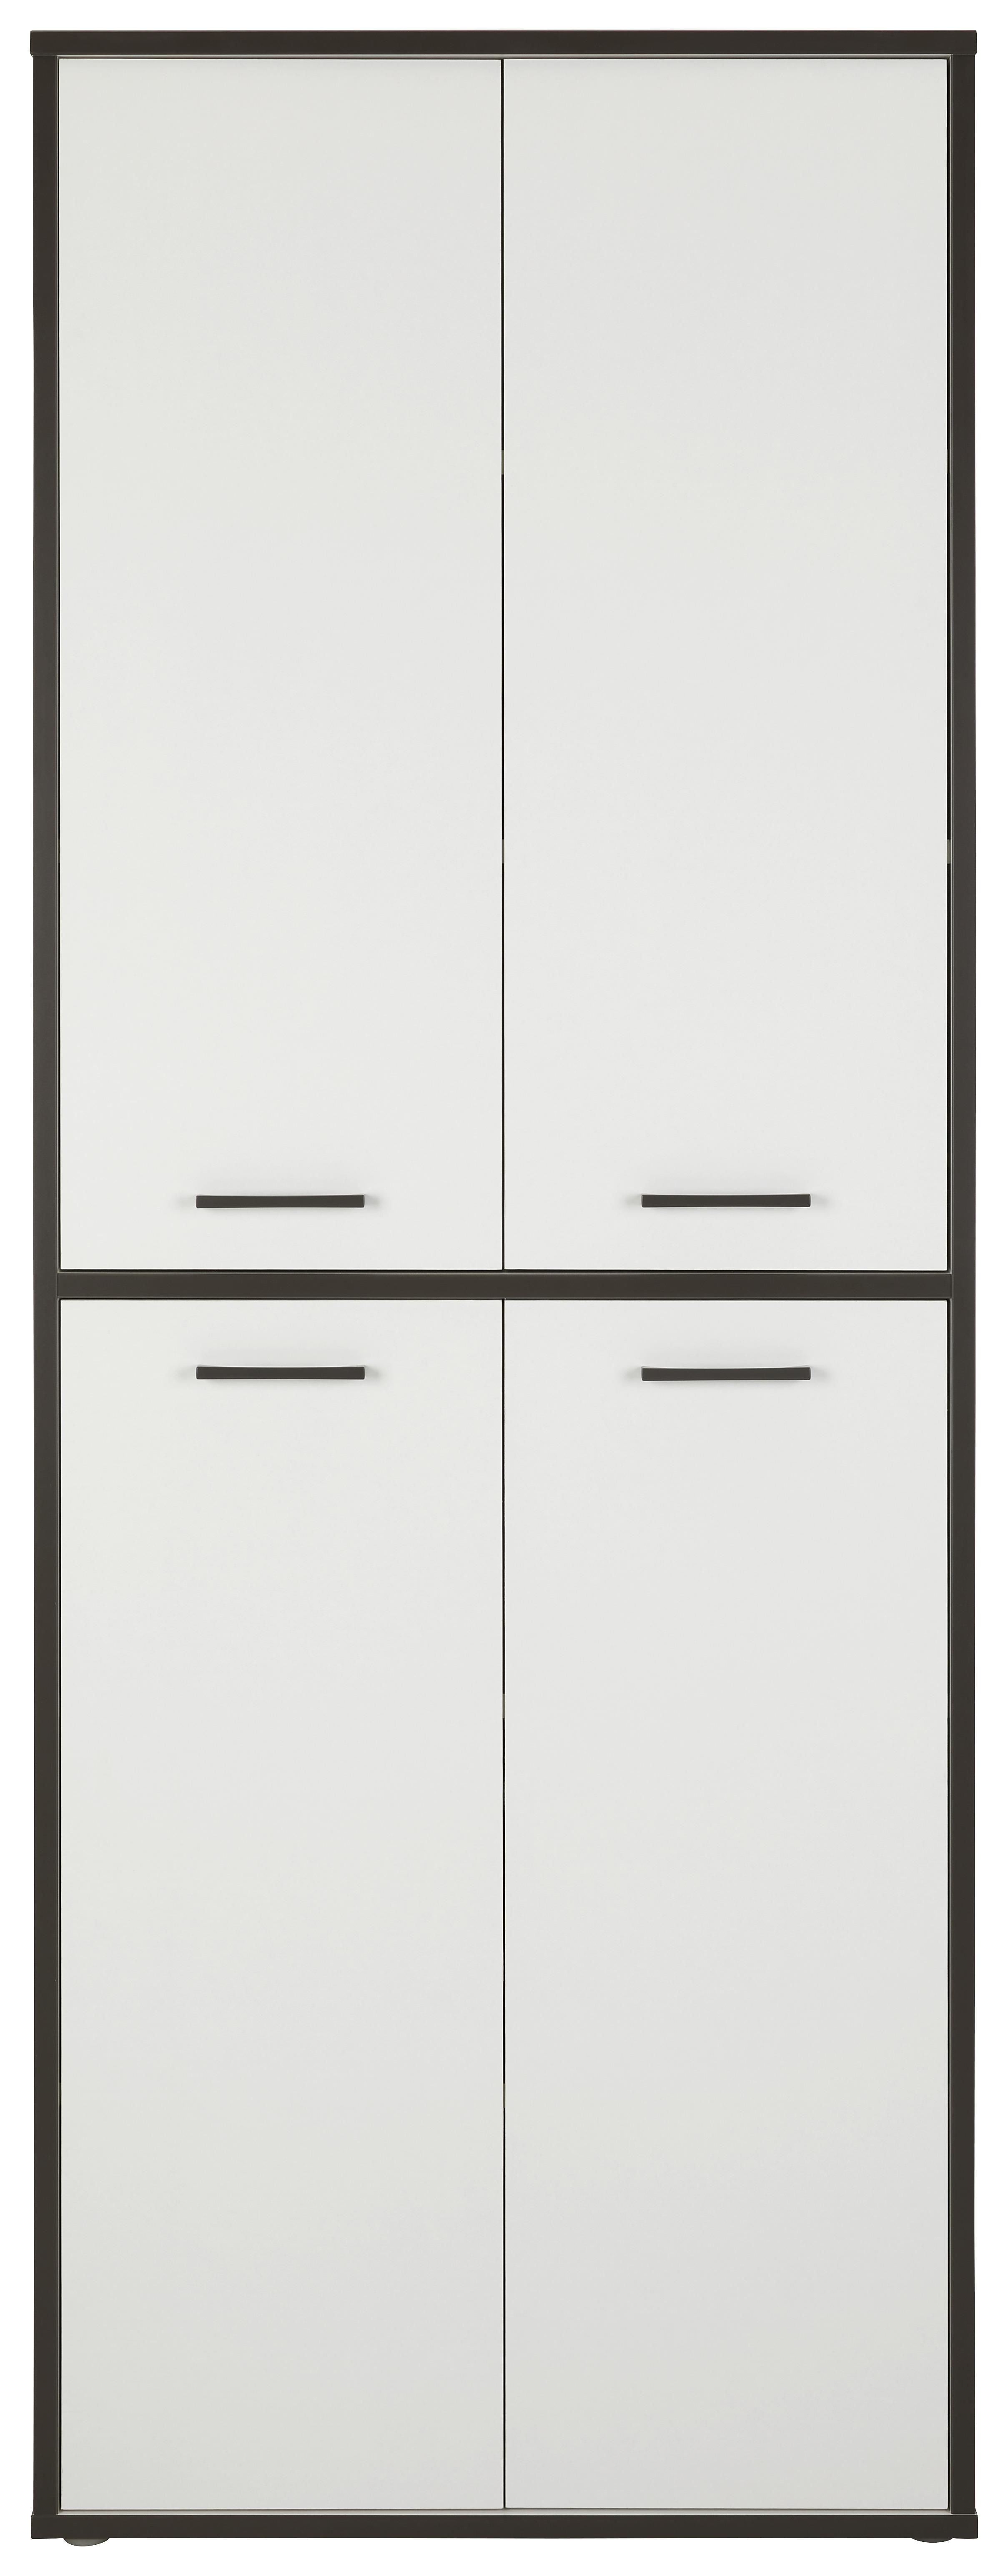 Víceúčelová Skříň Keflavik -Exklusiv- - šedá/bílá, Moderní, kompozitní dřevo/plast (84,5/226,4/41,5cm) - Modern Living